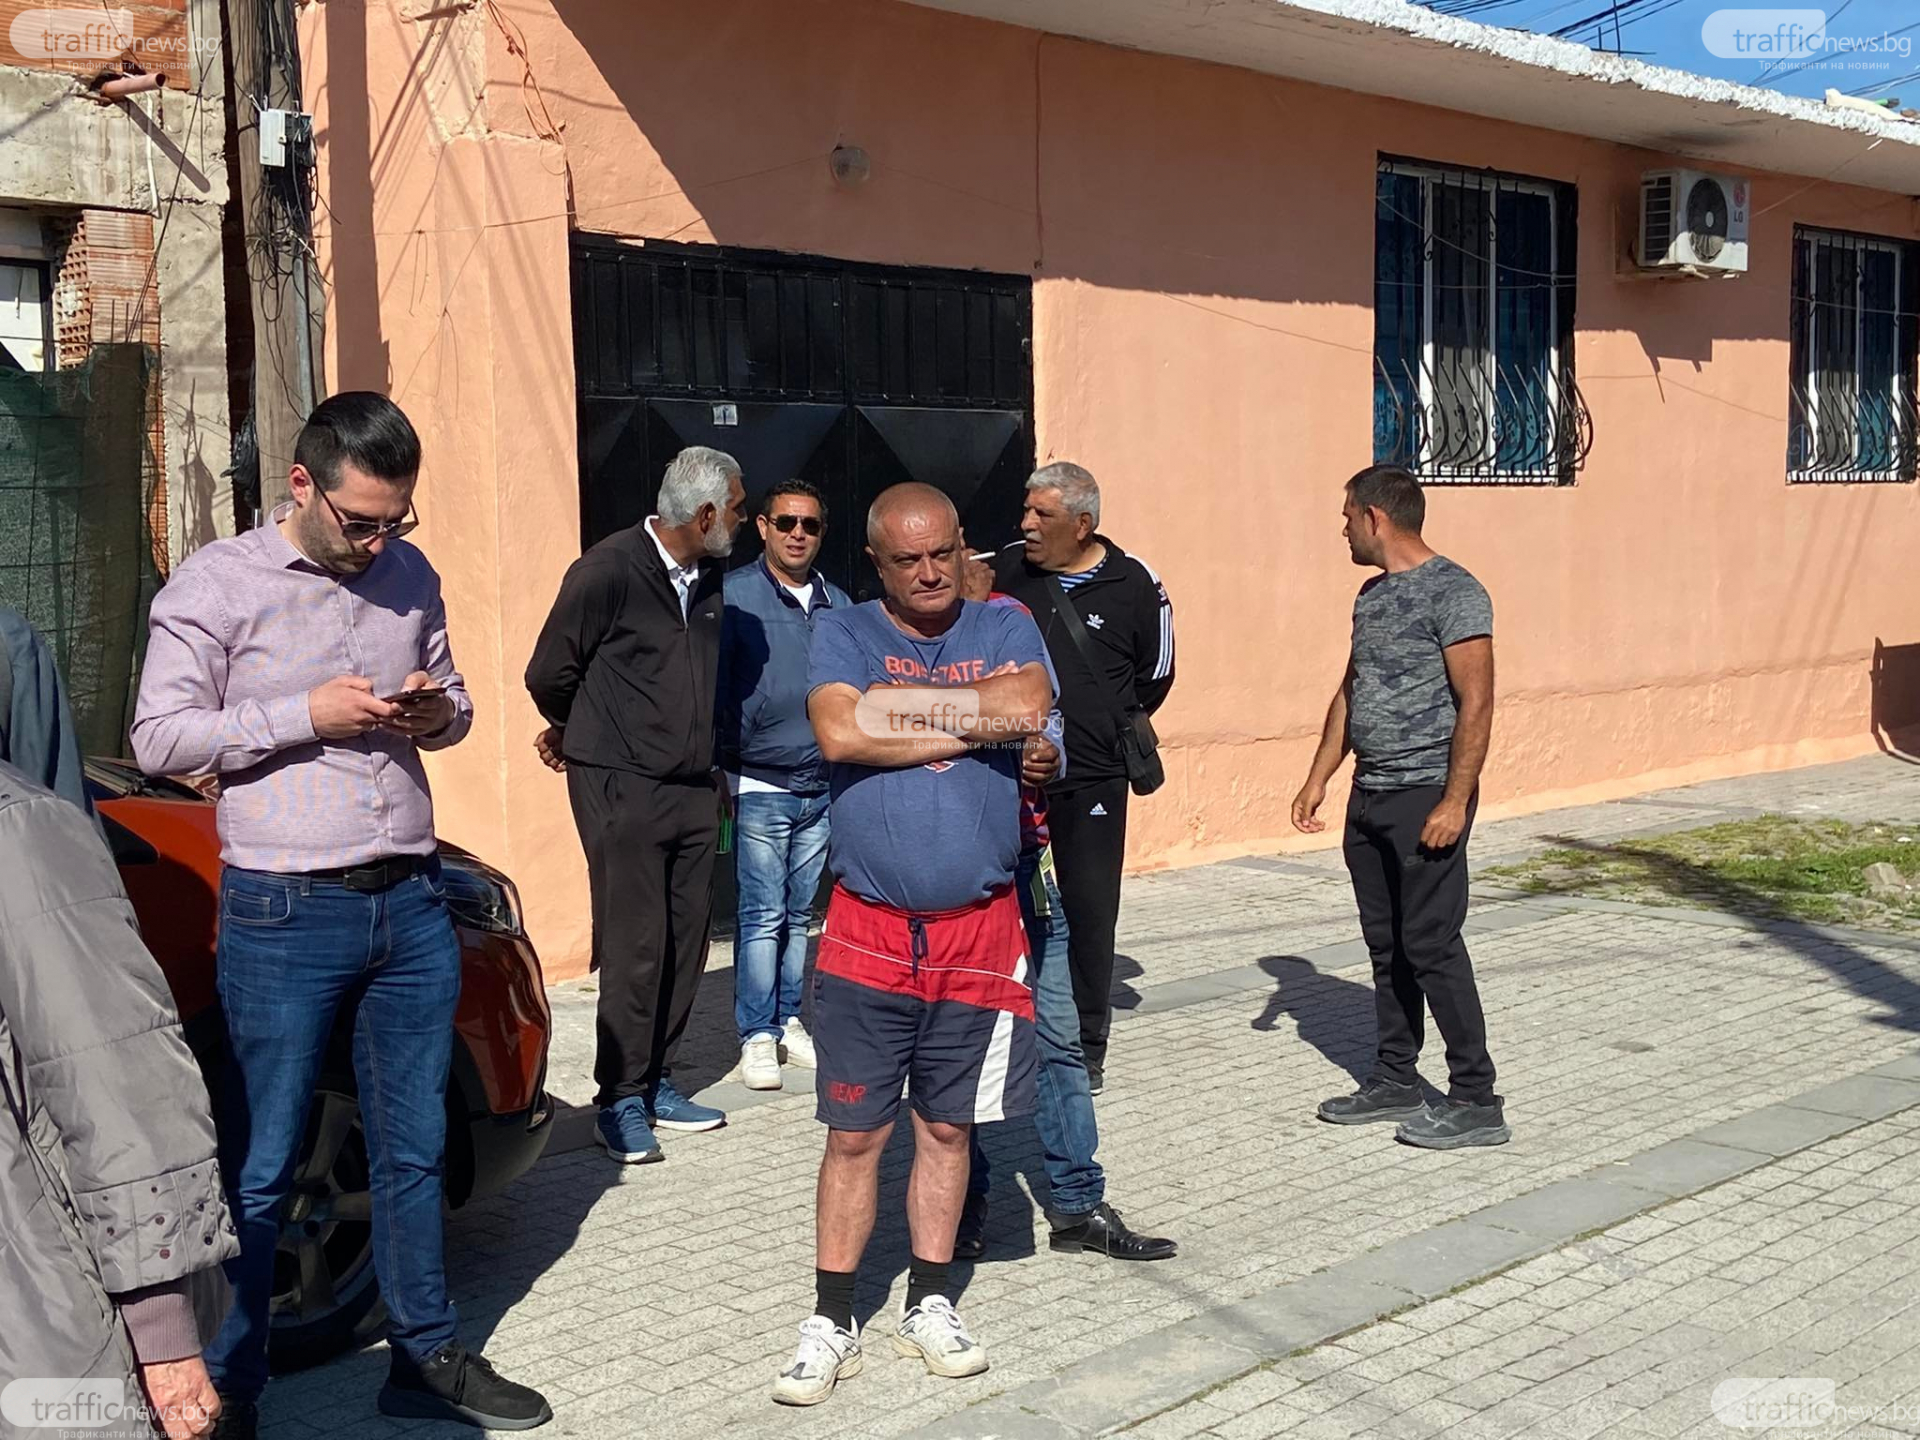 Багери тръгнаха срещу палата на богат ром в Пловдив и ето какво направи родата СНИМКИ